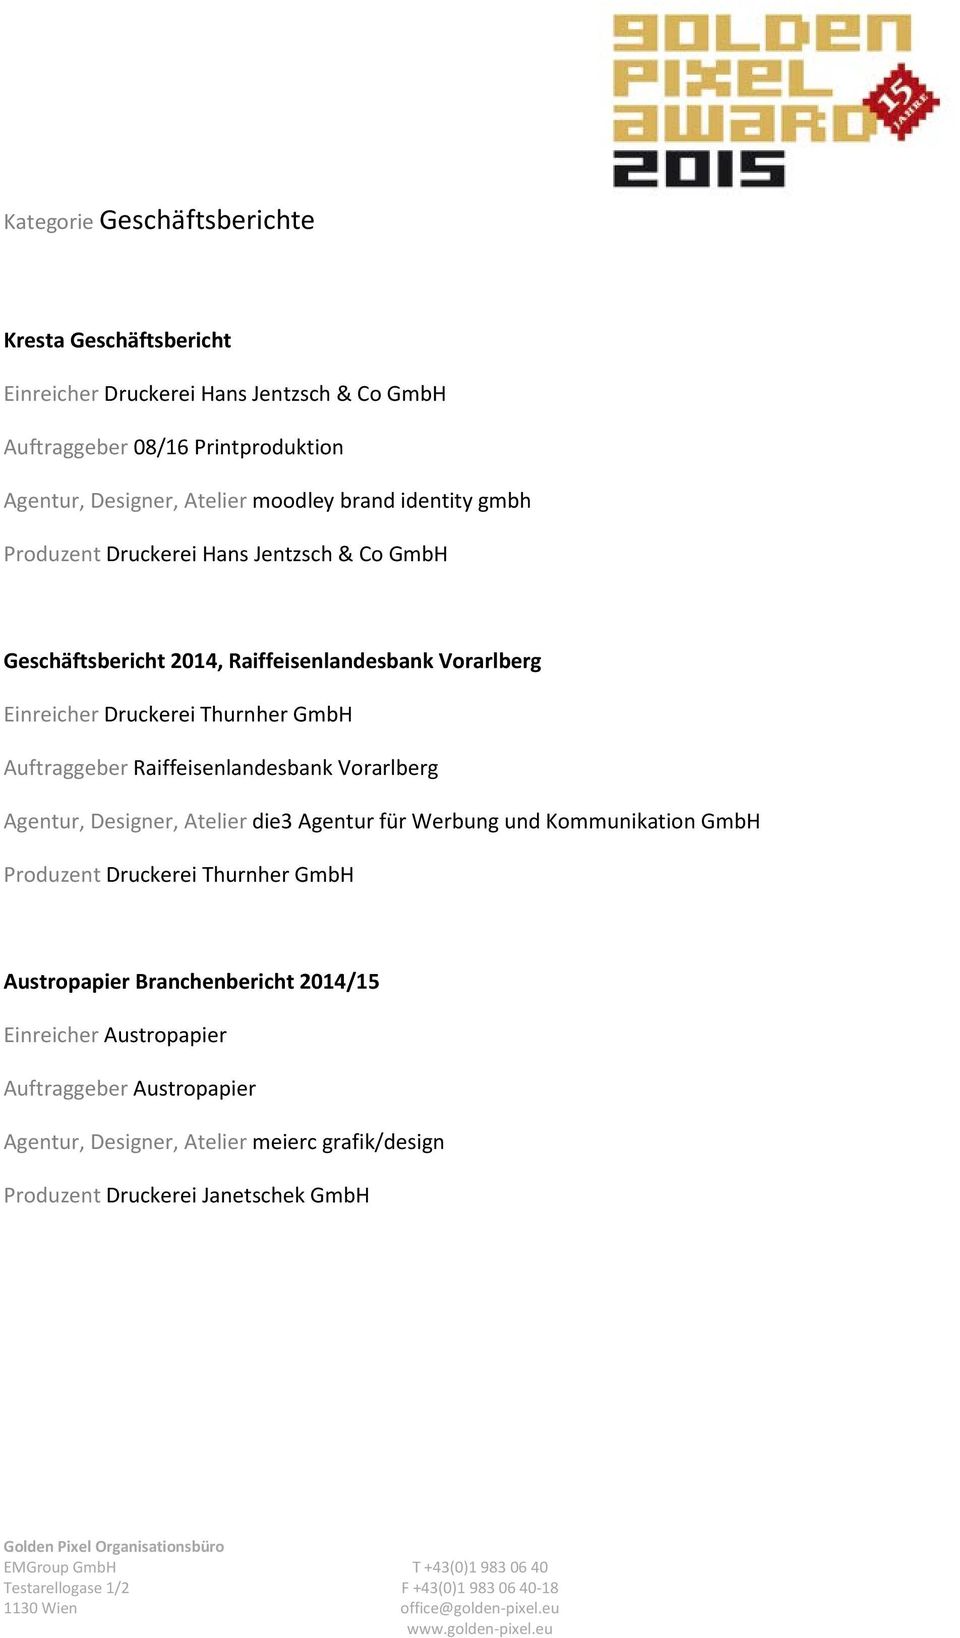 Auftraggeber Raiffeisenlandesbank Vorarlberg Agentur, Designer, Atelier die3 Agentur für Werbung und Kommunikation GmbH Produzent Druckerei Thurnher GmbH